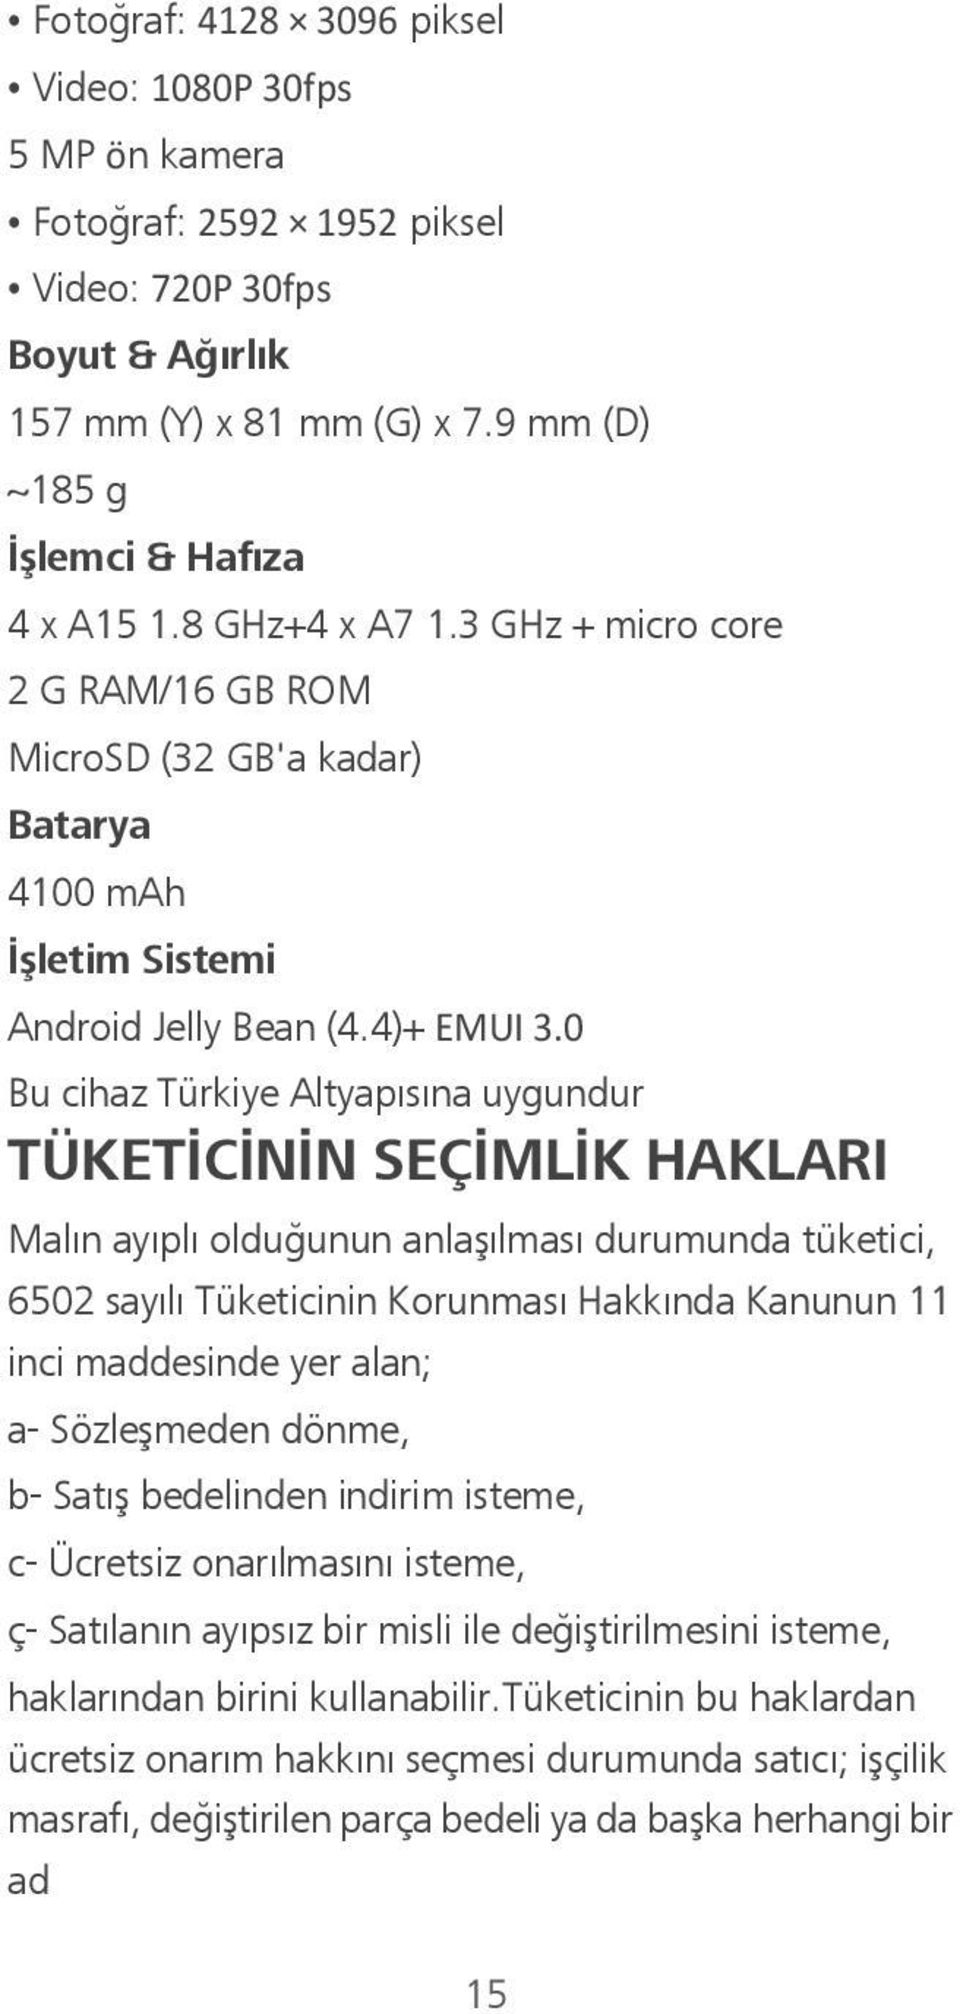 0 Bu cihaz Türkiye Altyapısına uygundur TÜKETİCİNİN SEÇİMLİK HAKLARI Malın ayıplı olduğunun anlaşılması durumunda tüketici, 6502 sayılı Tüketicinin Korunması Hakkında Kanunun 11 inci maddesinde yer